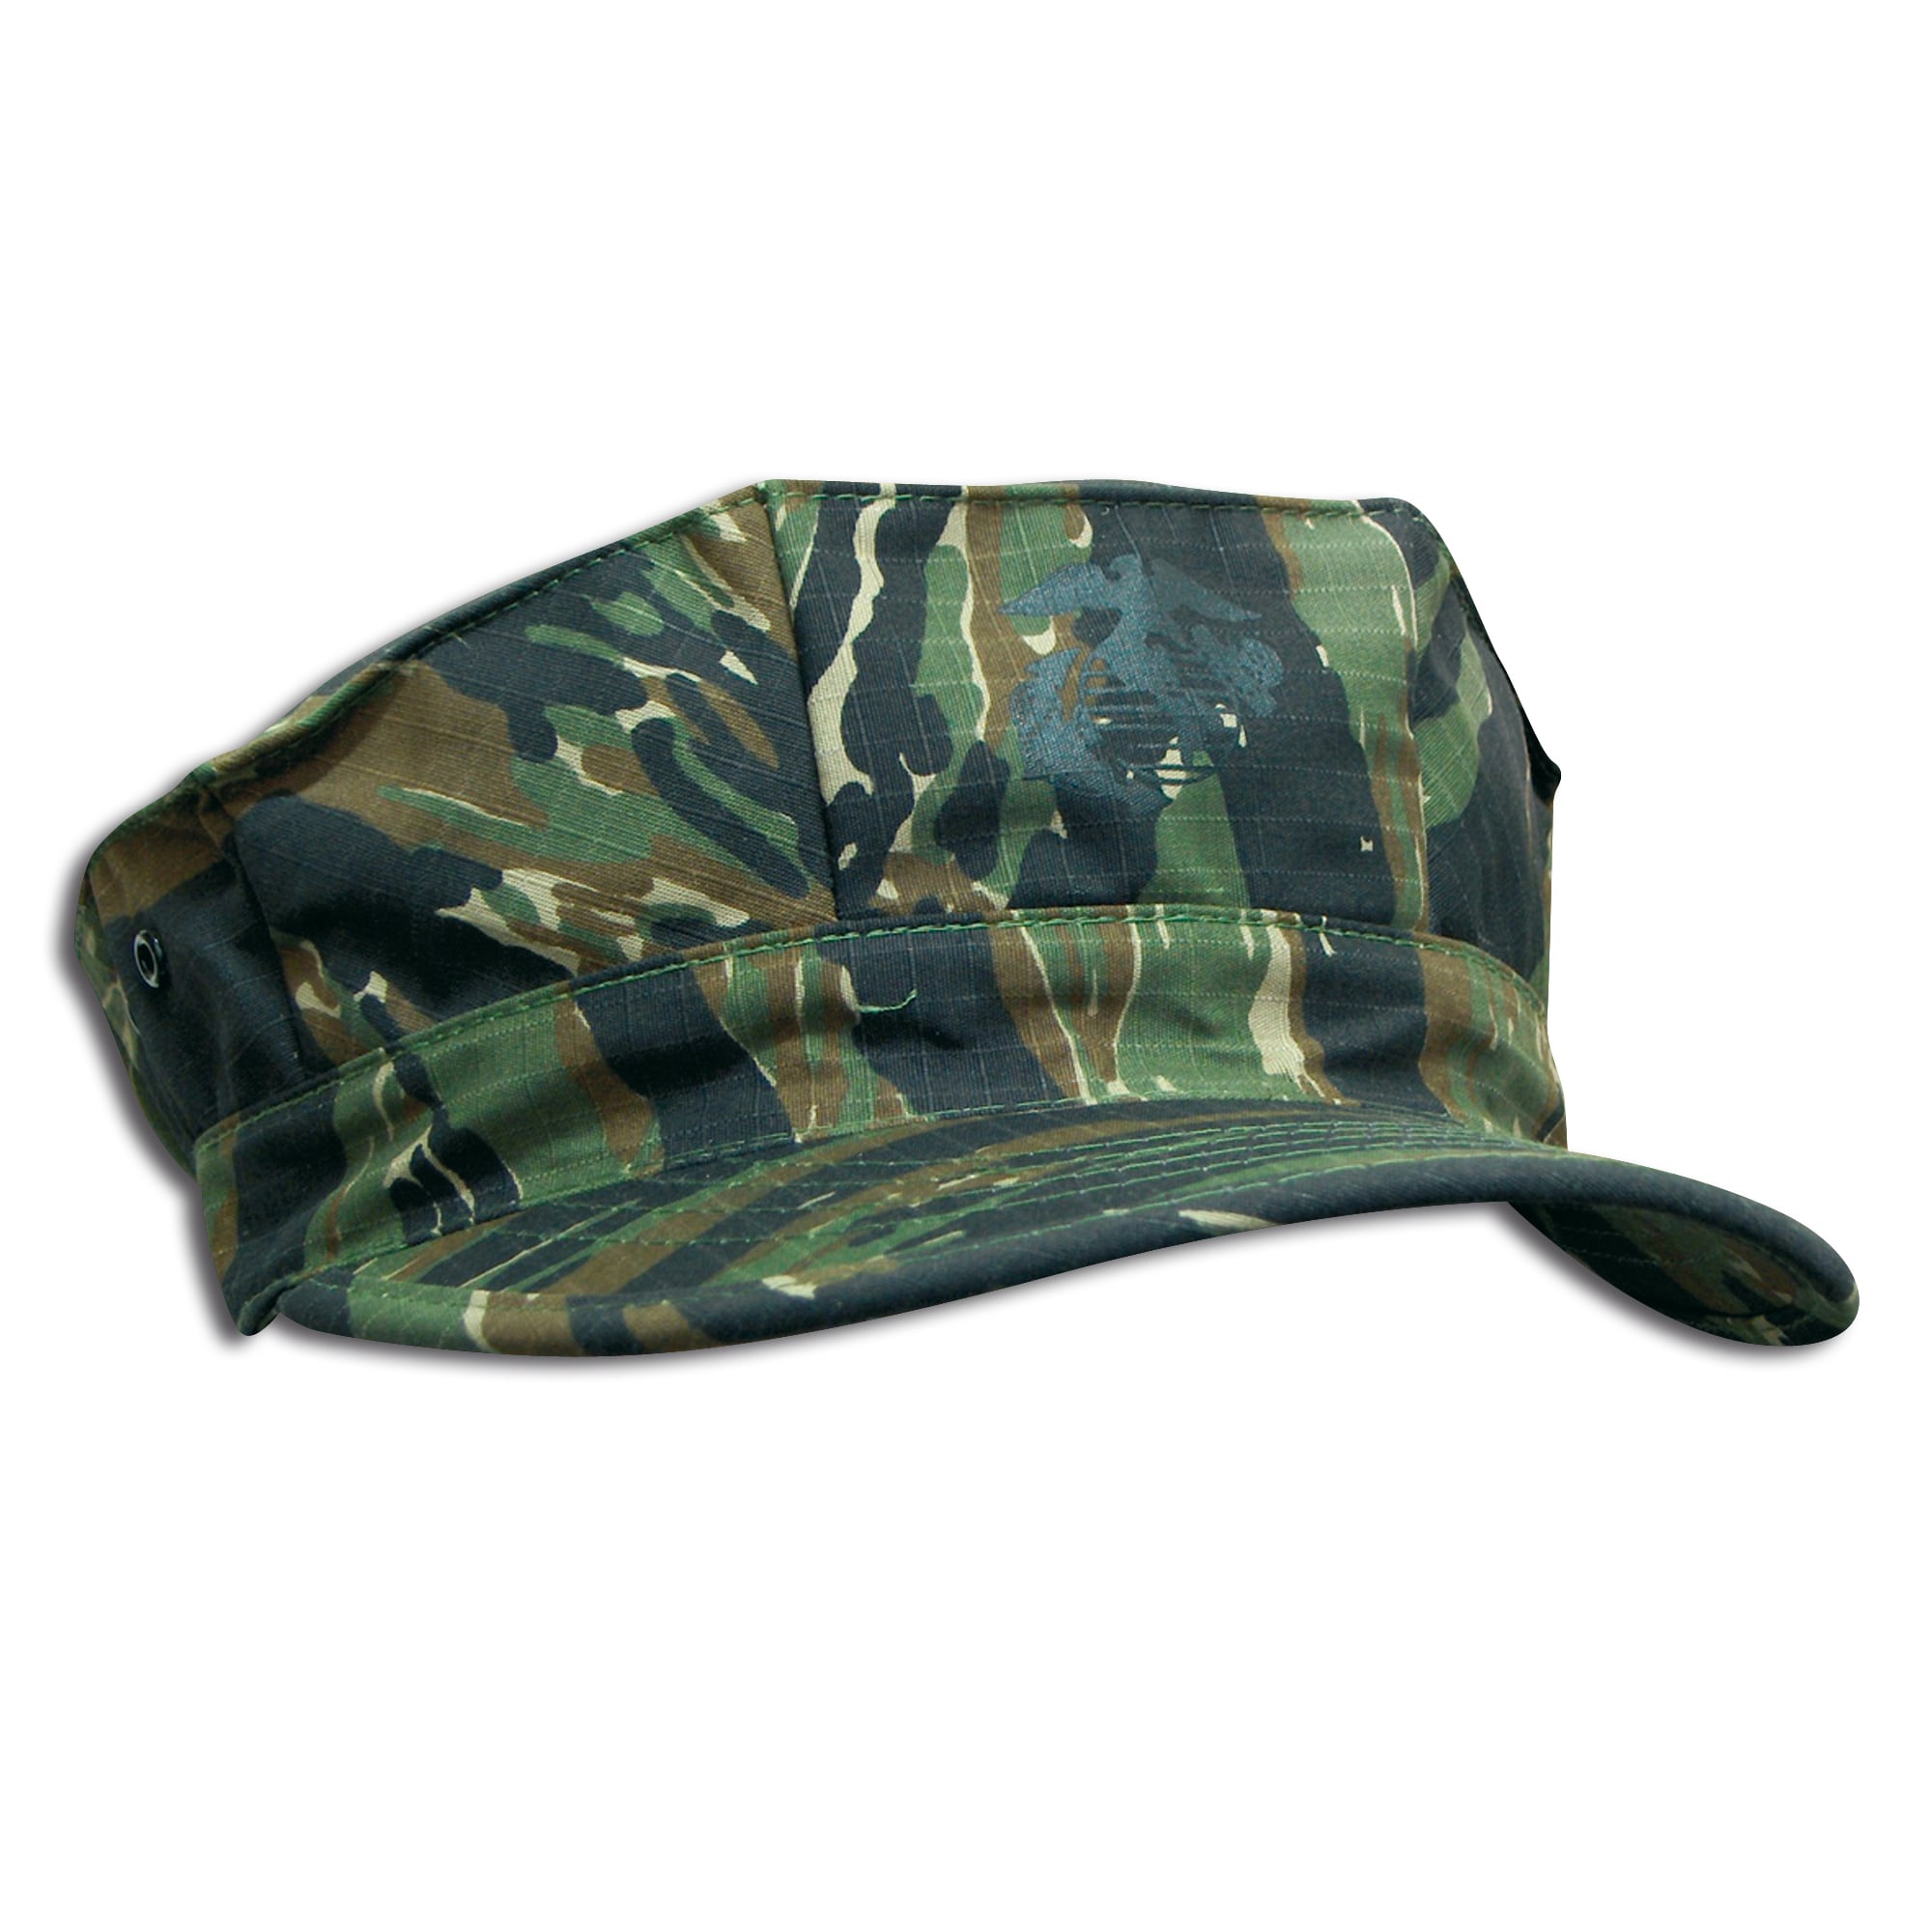 U.S.M.C. Cap tigerstripe | U.S.M.C. Cap tigerstripe | BDU Caps | Hats ...